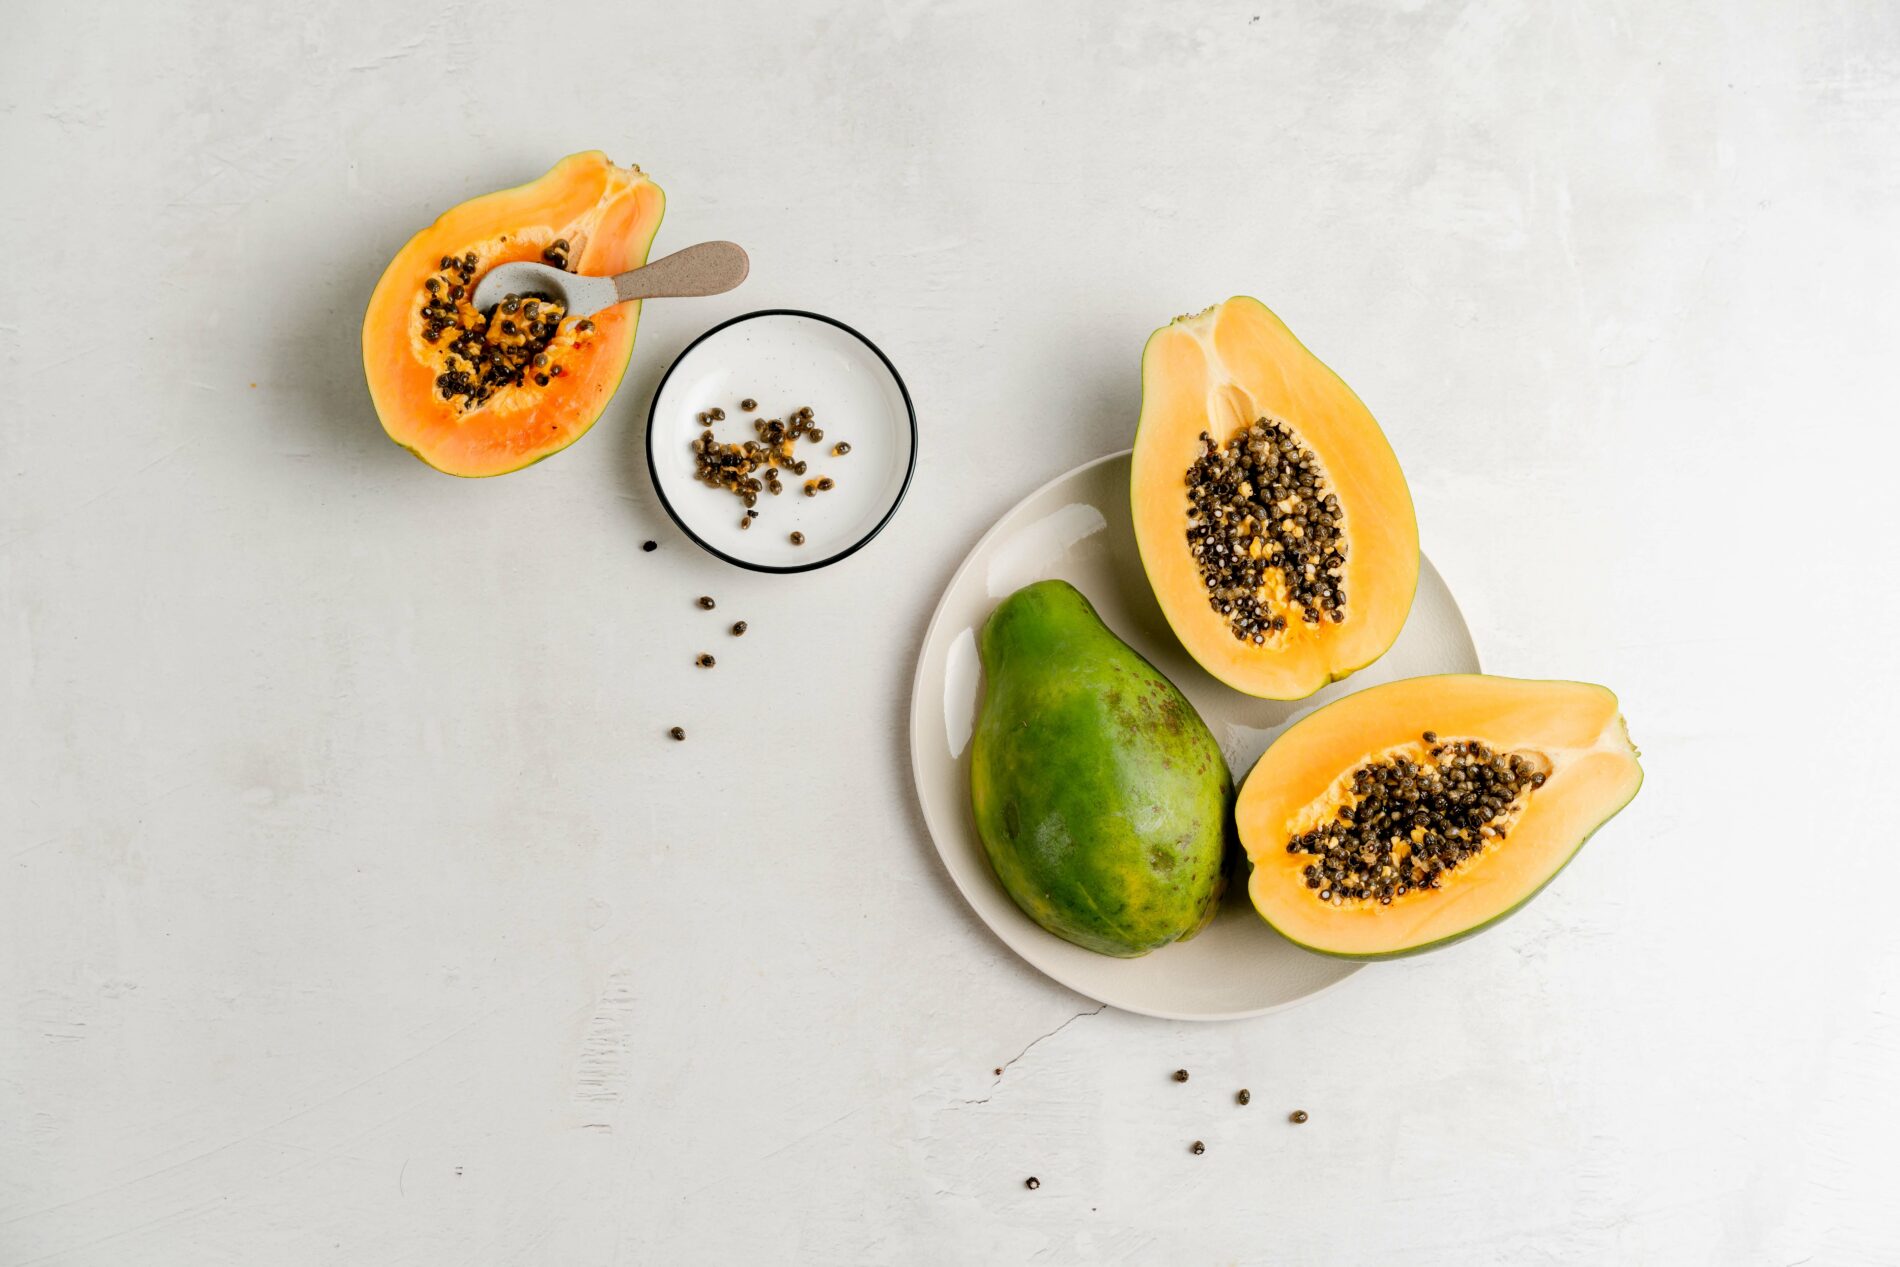 4 halved papayas arranged on white background